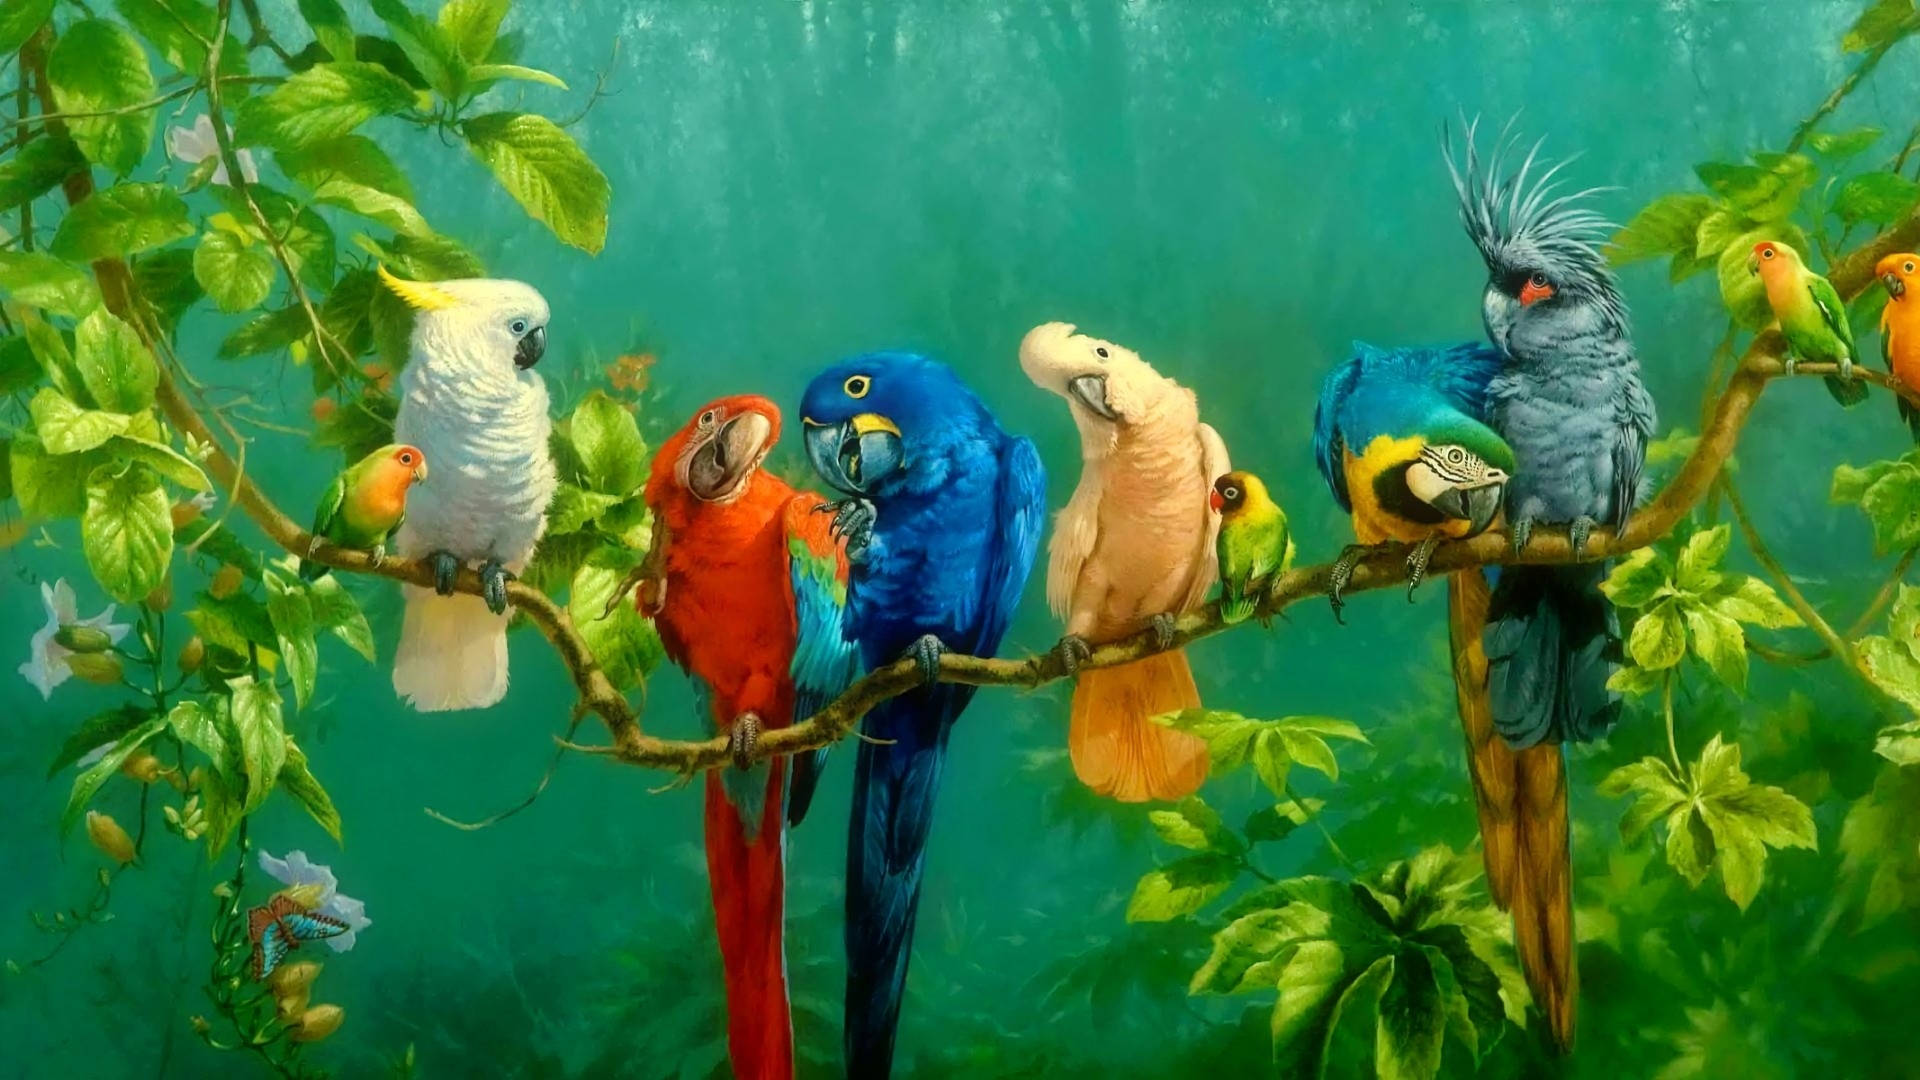 1920x1080 Hd Birds Parrot Wallpaper